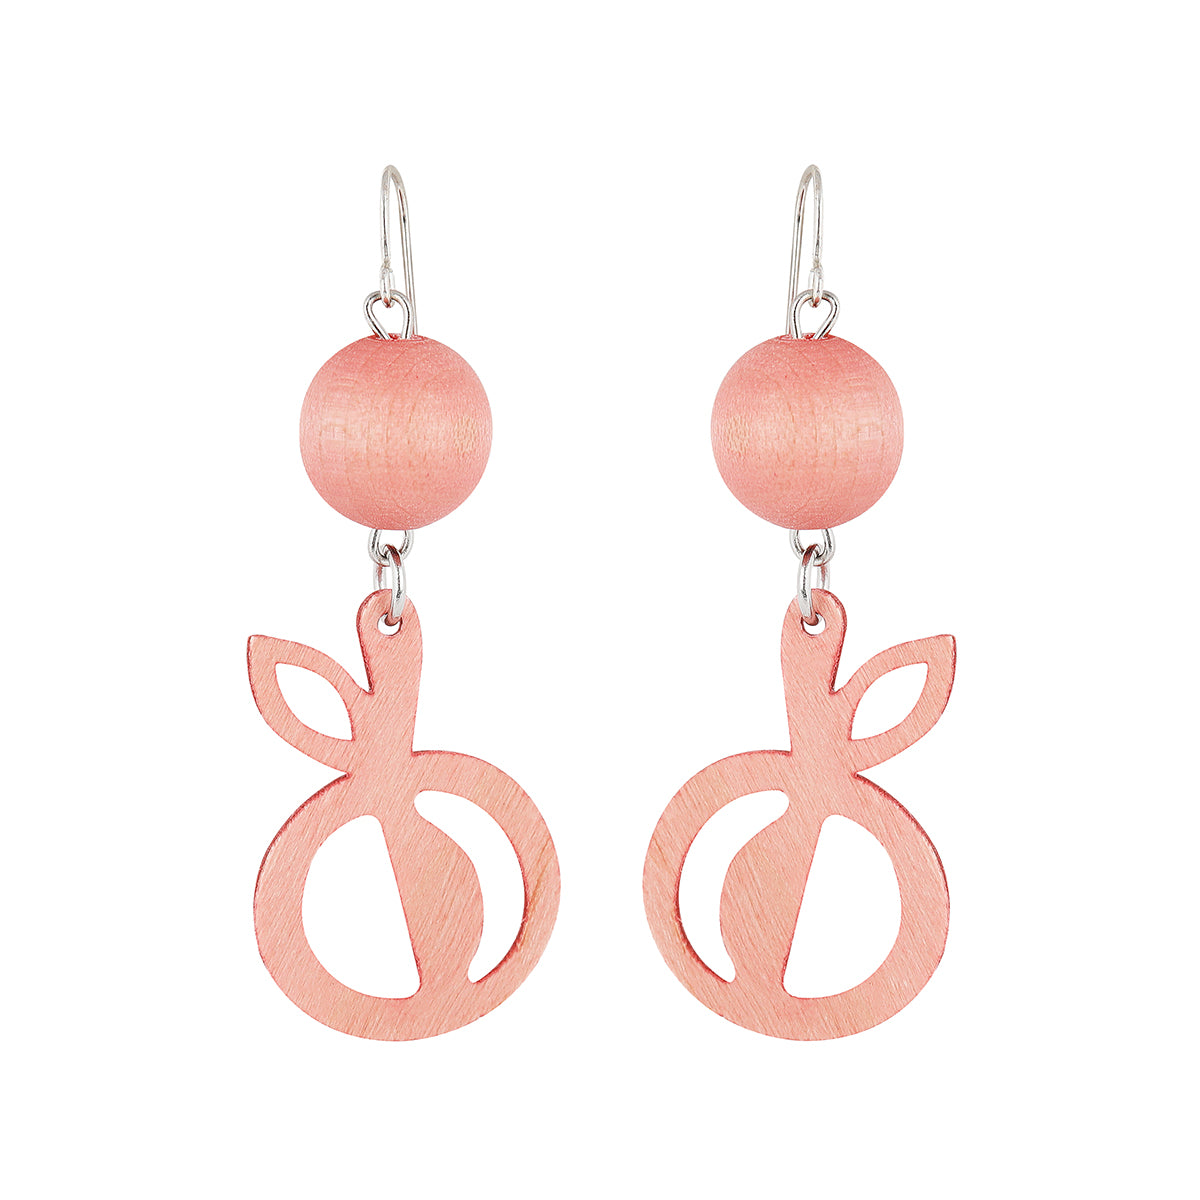 Omena earrings, pink